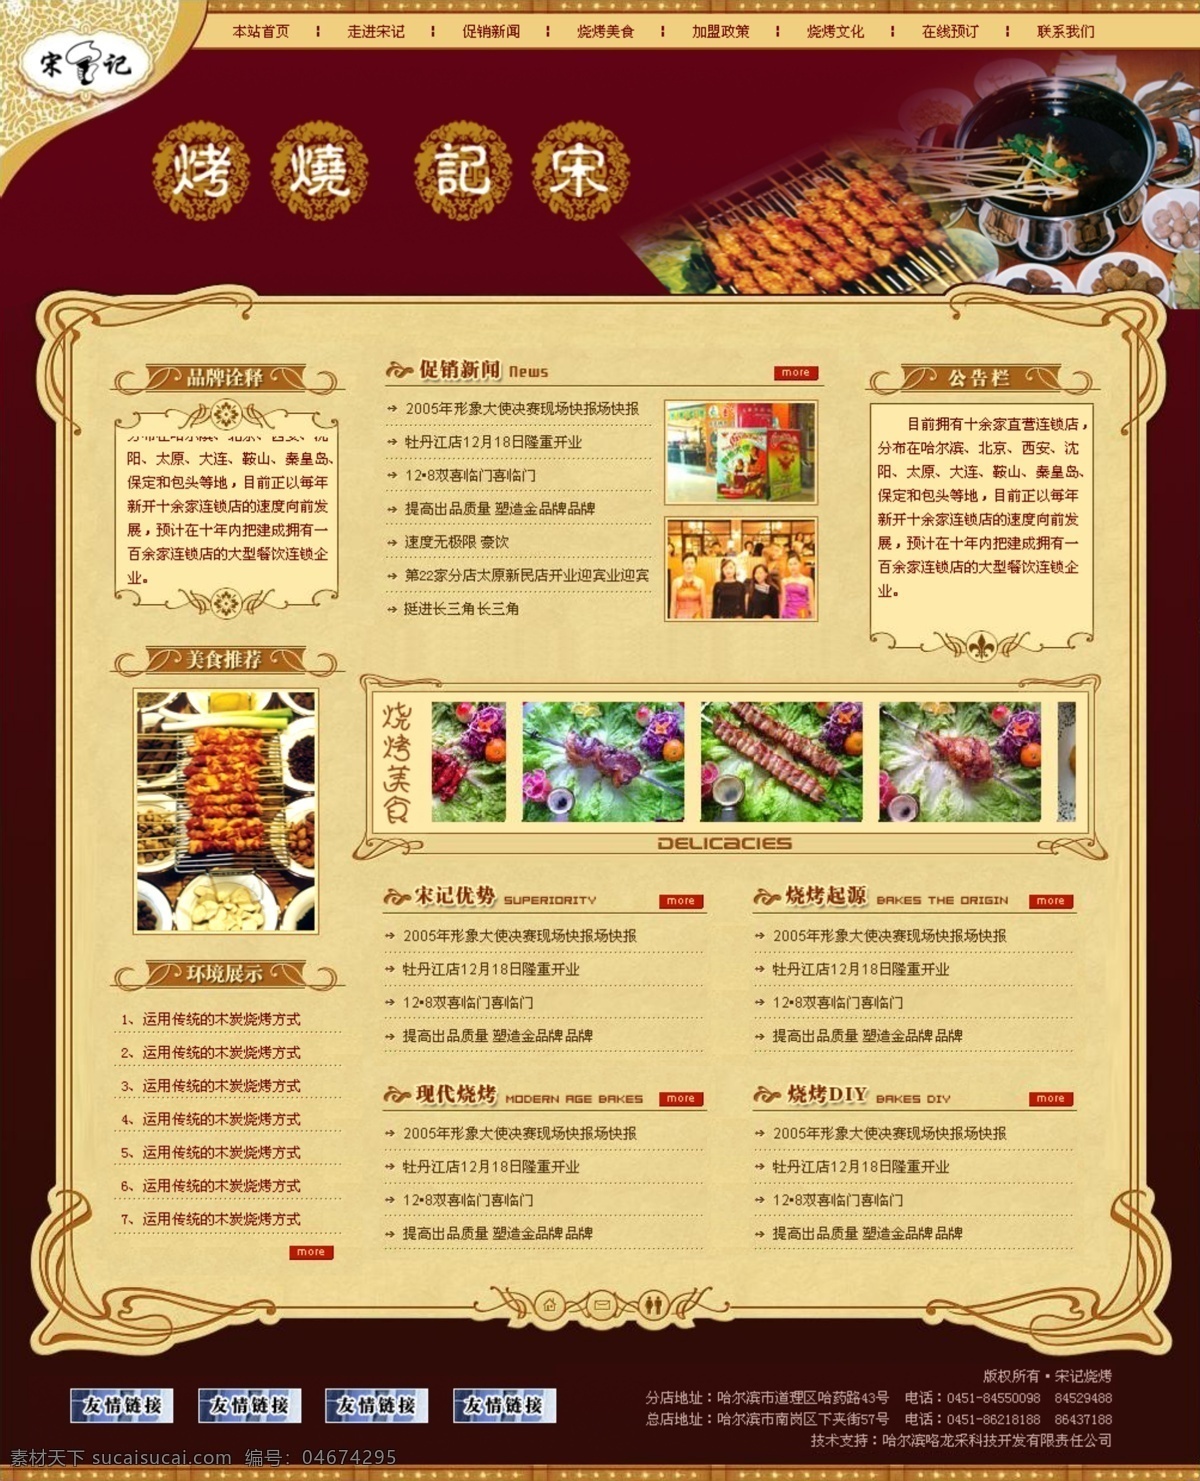 烧烤 餐厅 古典 网页模板 暗红色背景 中国风格 网页素材